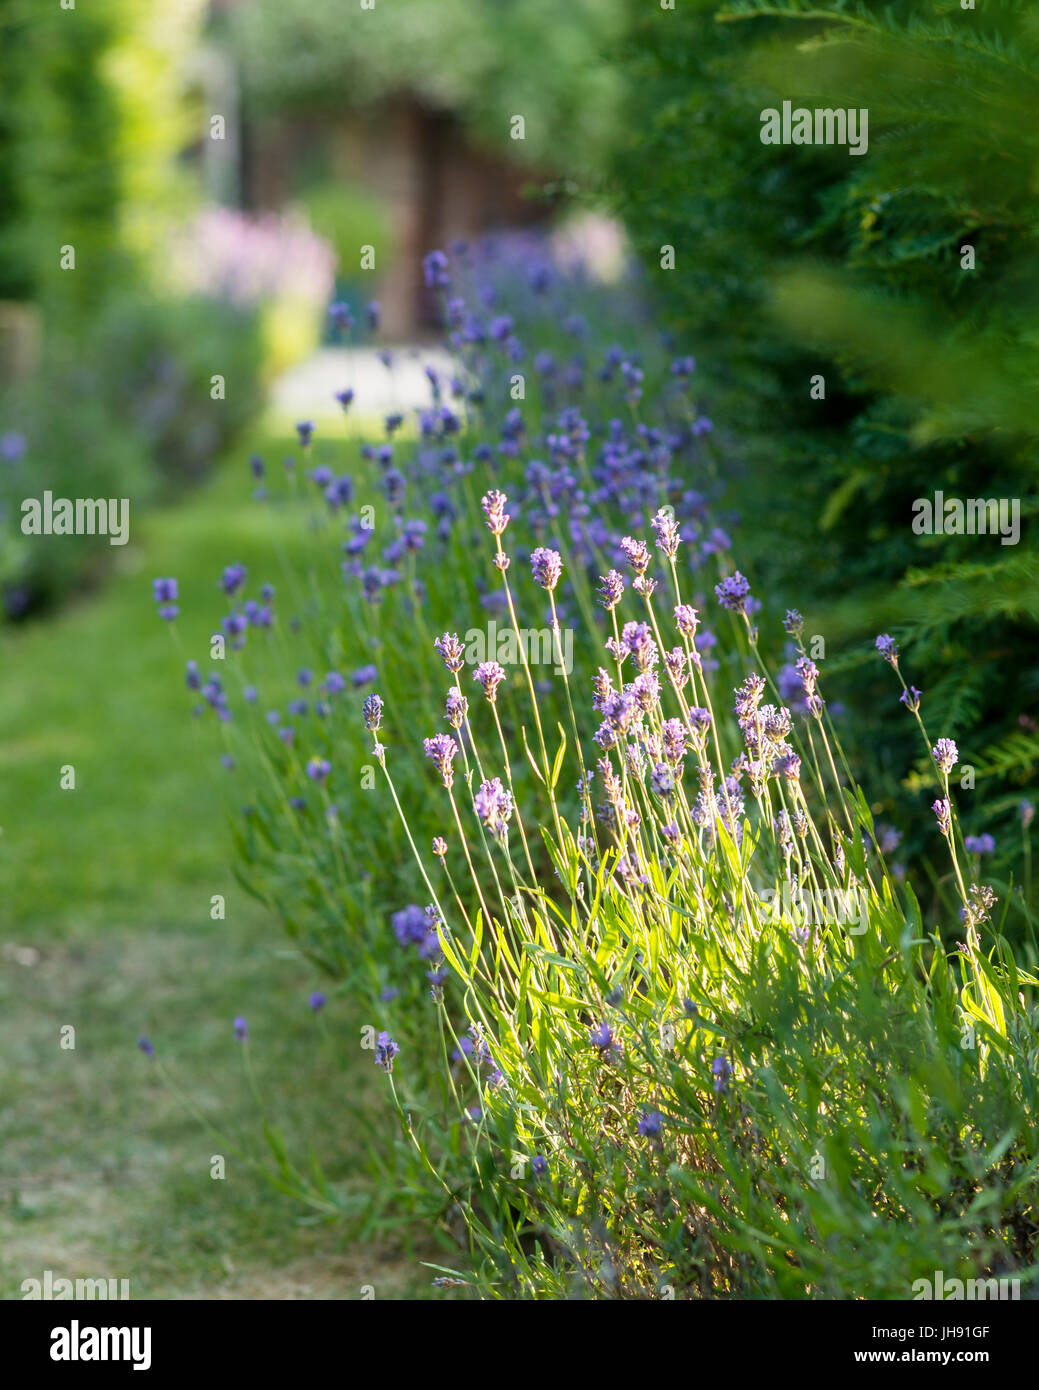 Lavender in garden Stock Photo